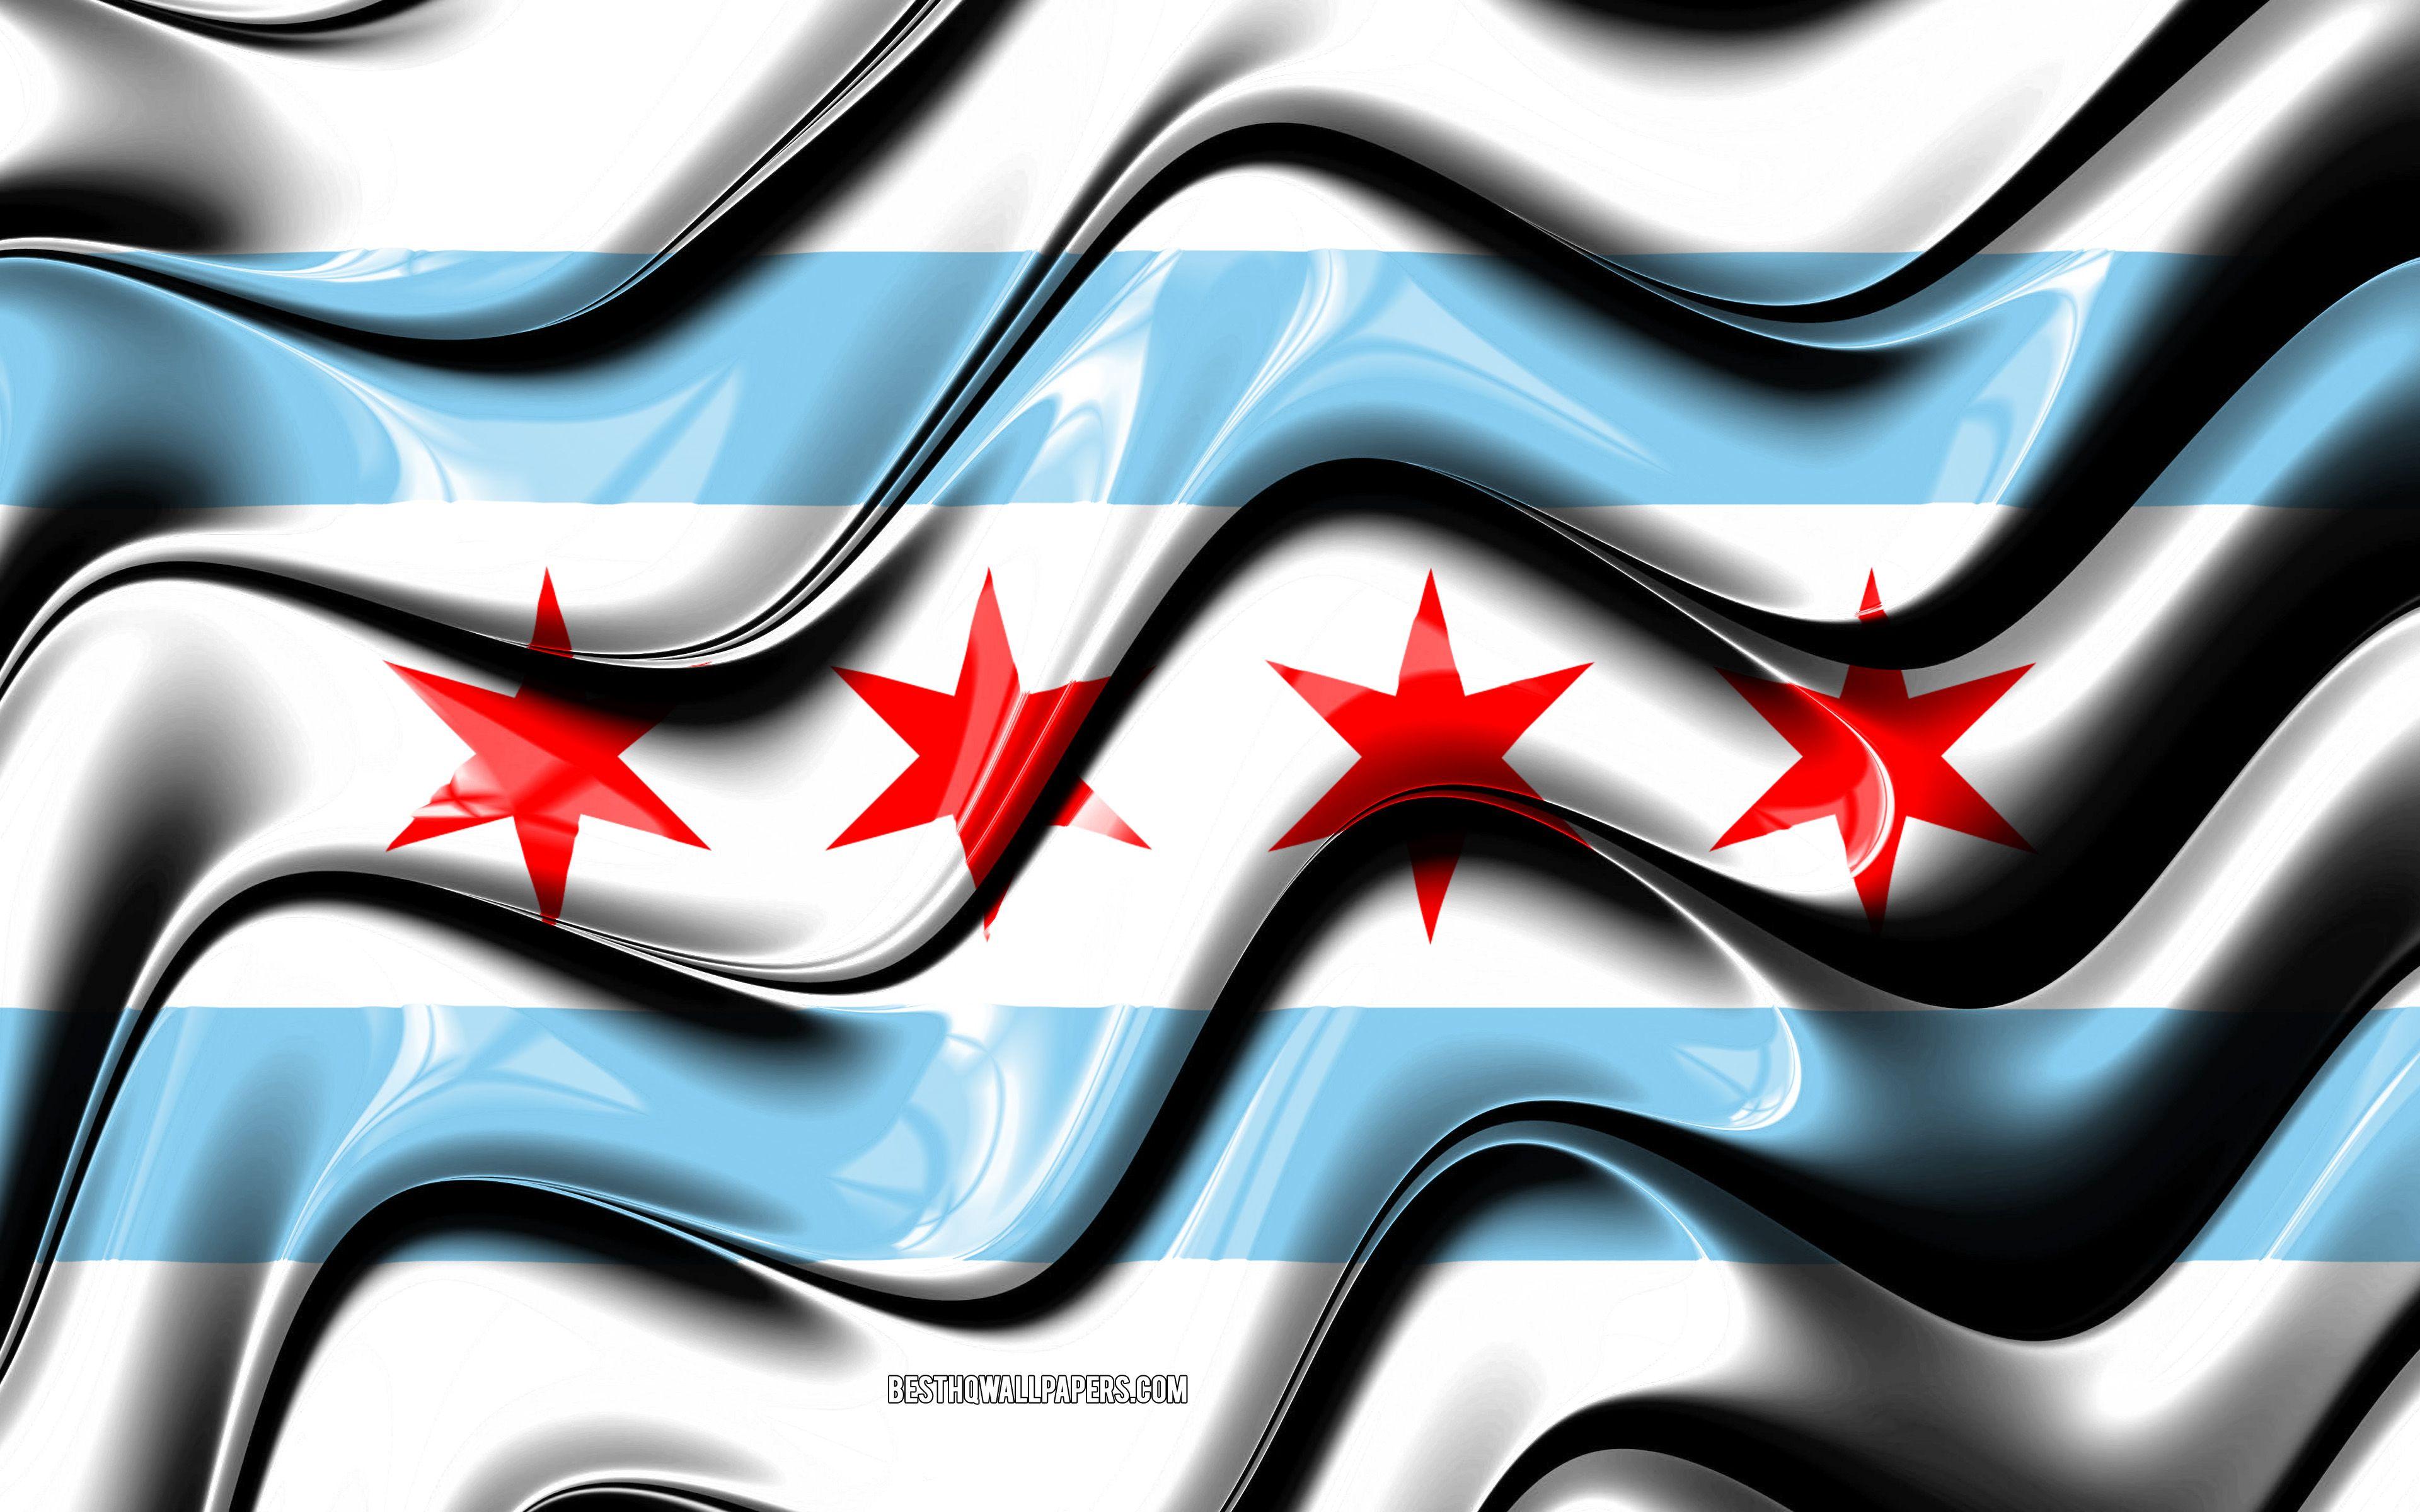 Chicago City Skyline With Flag Of Chicago On Background  Arte vetorial de  stock e mais imagens de Chicago  Illinois  iStock